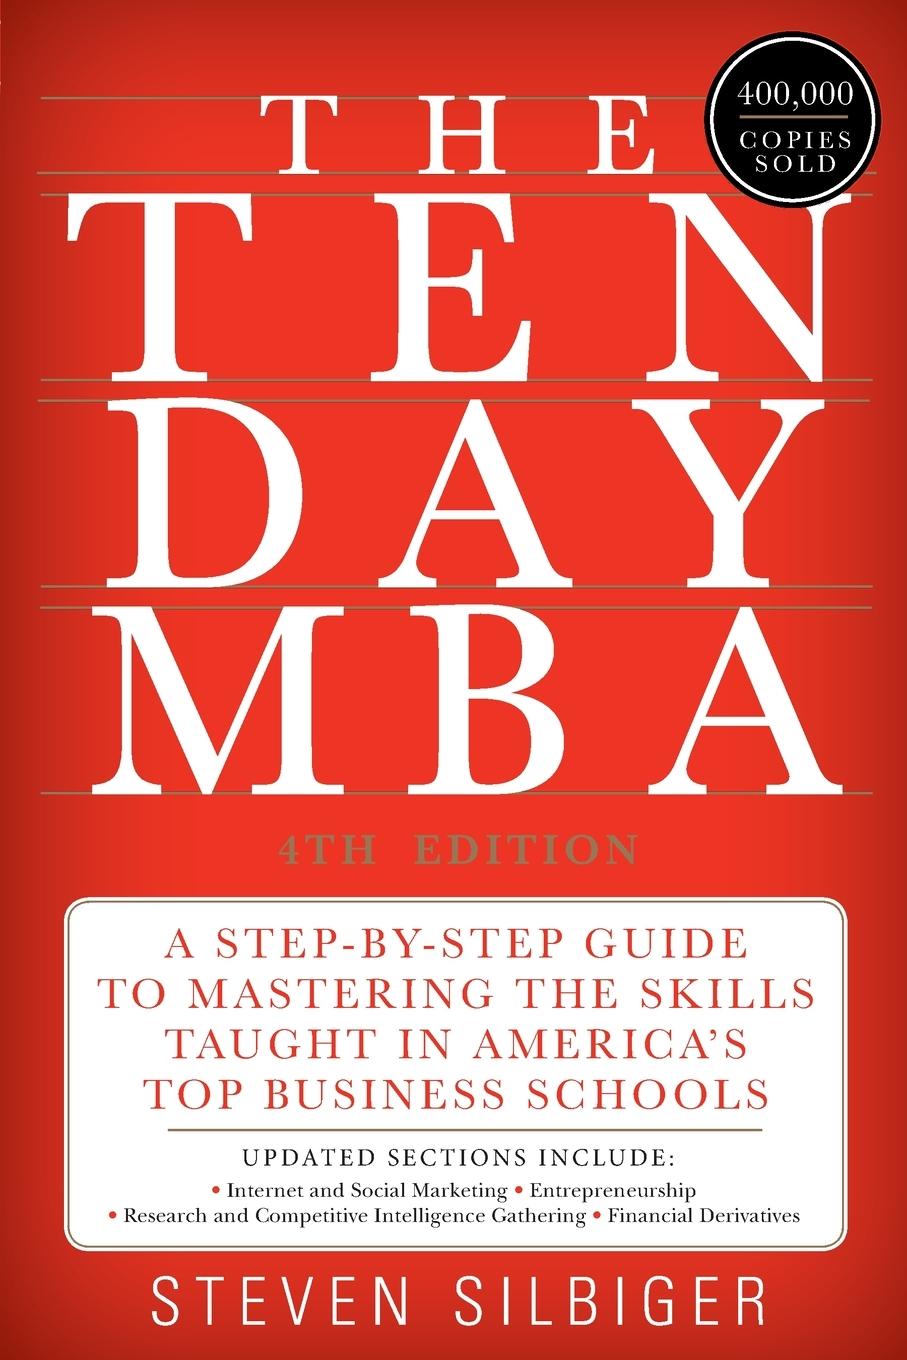 Ten-Day MBA 4th Ed., The / Steven A Silbiger / Taschenbuch / Paperback / Englisch / 2020 / Harper Business / EAN 9780062199577 - Silbiger, Steven A